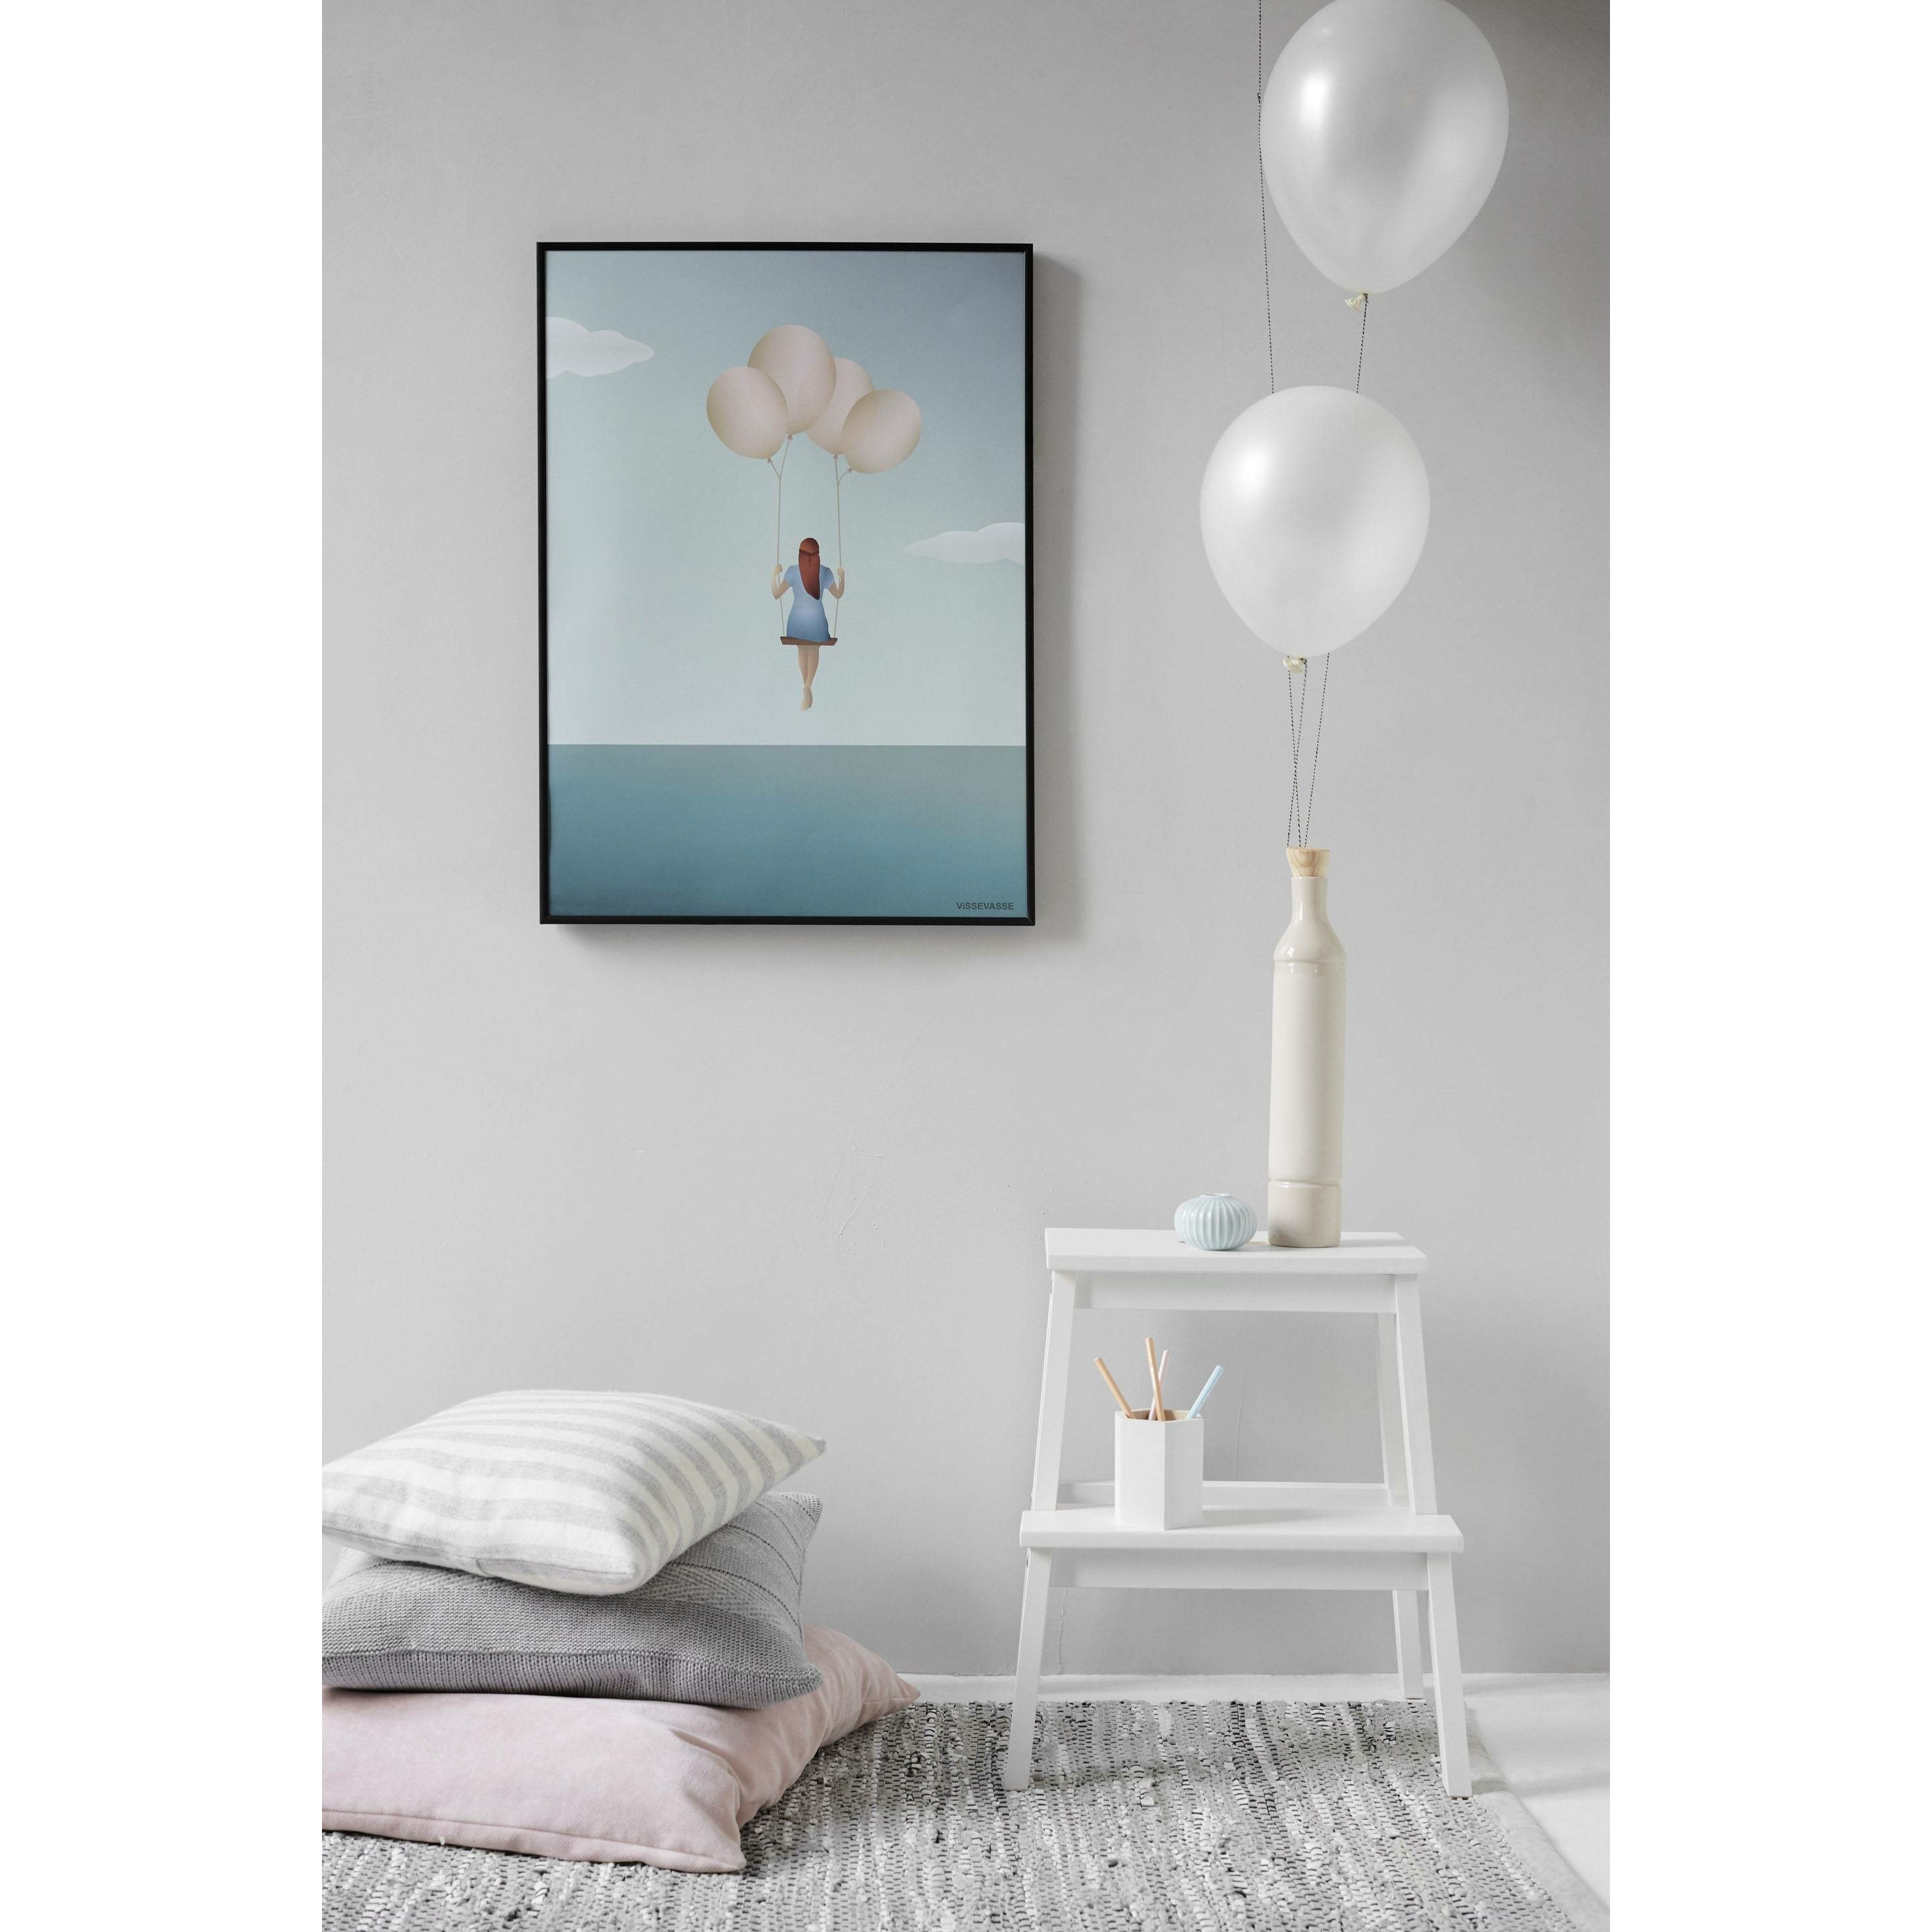 Vissevasse Affiche de rêve de ballon, 70 x100 cm